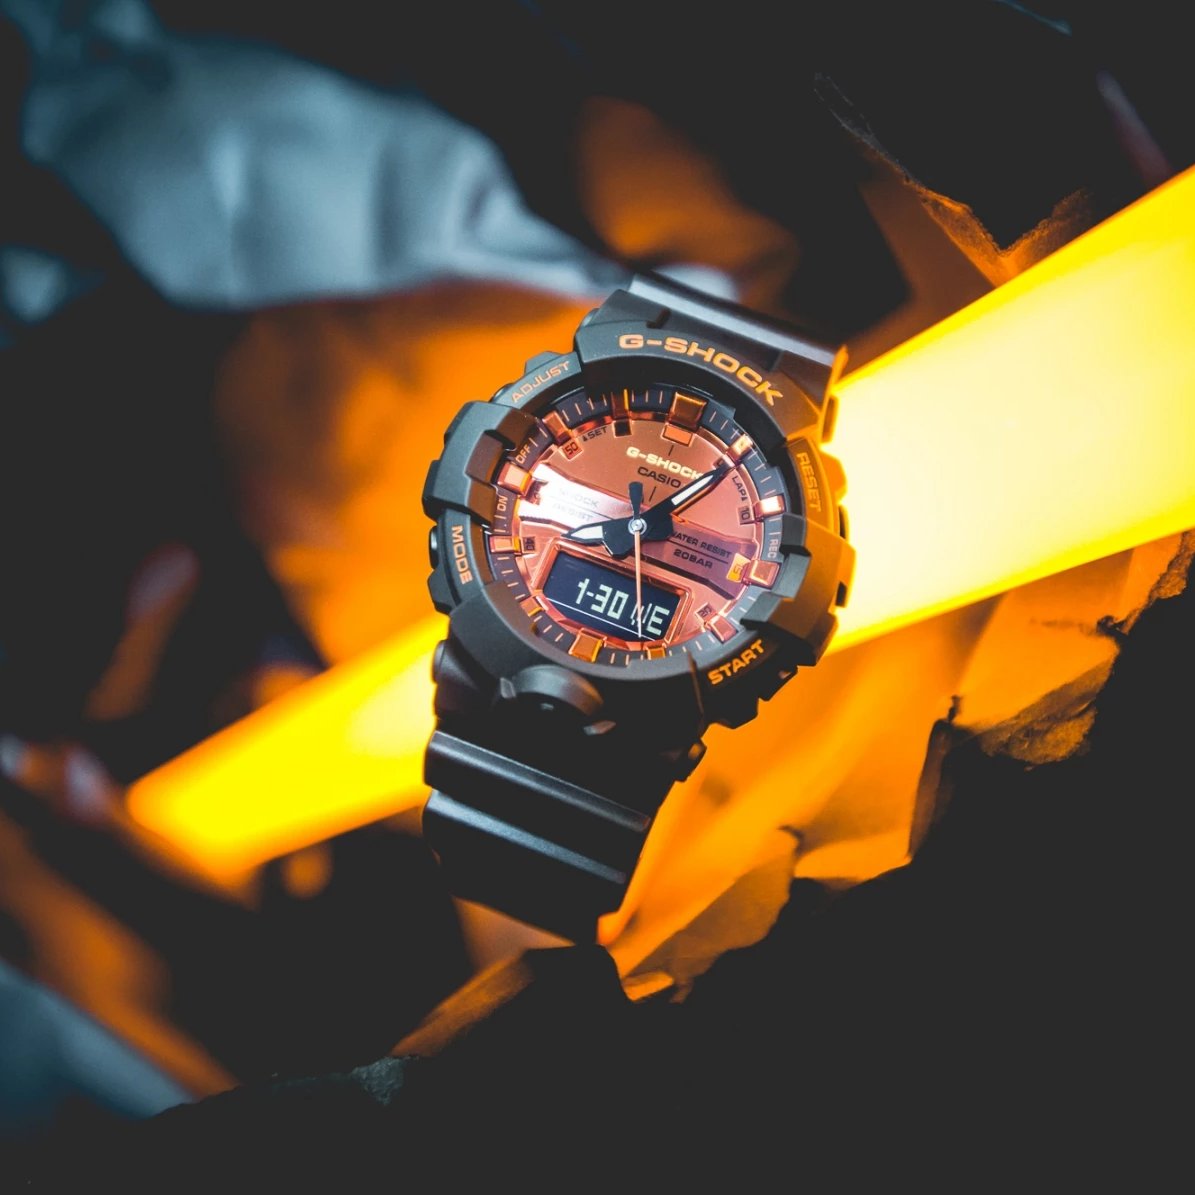 クォーツ腕時計・G-SHOCK/デジアナ/BLK×オレンジ/GA-800BR-1AJF/ - 腕時計